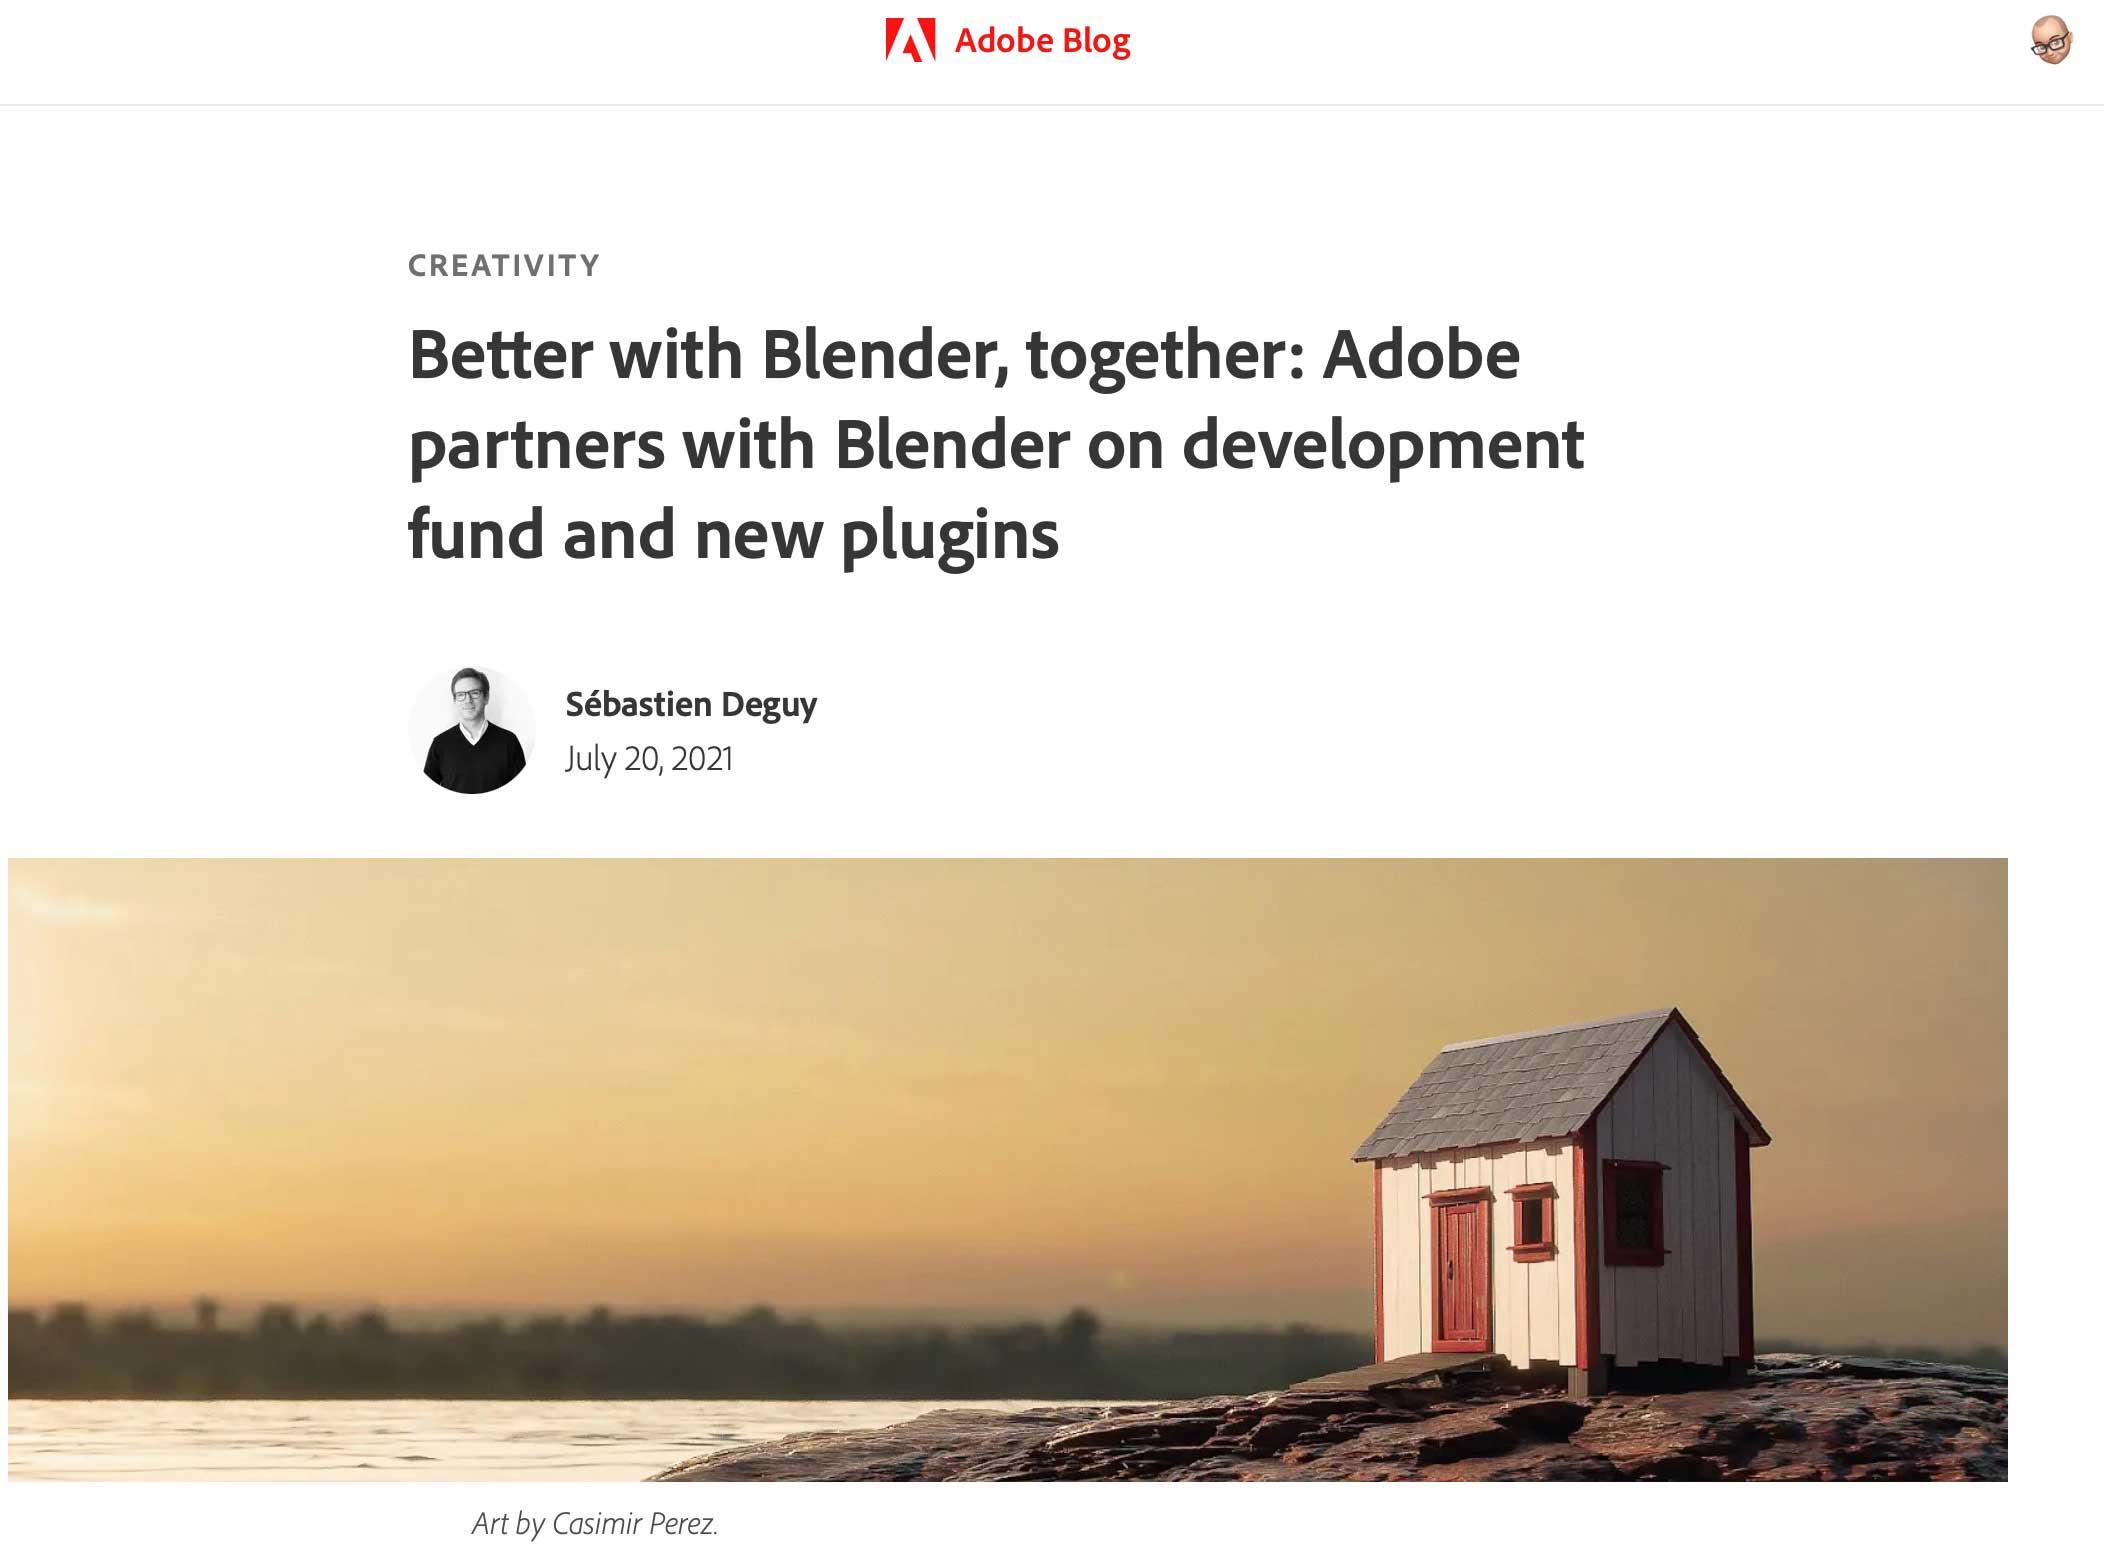 Auf dem Adobe-Blog wurde die Partnerschaft von Adobe mit Blender verkündet – un zwei neue Plug-ins